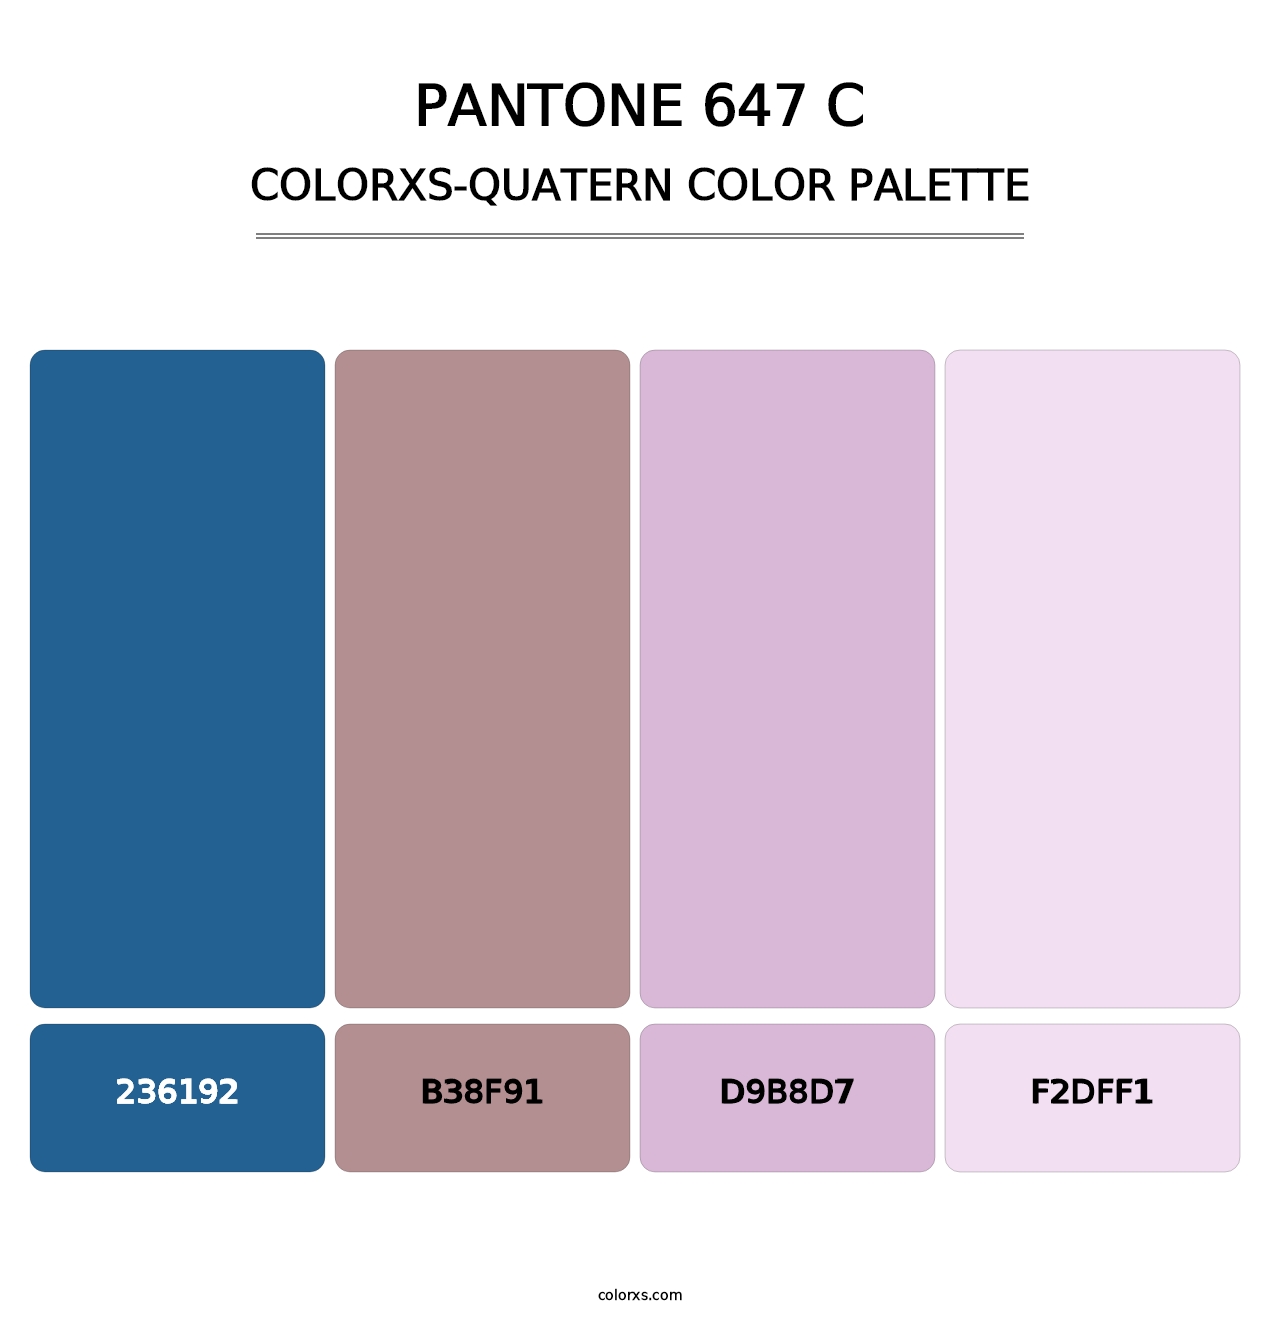 PANTONE 647 C - Colorxs Quatern Palette